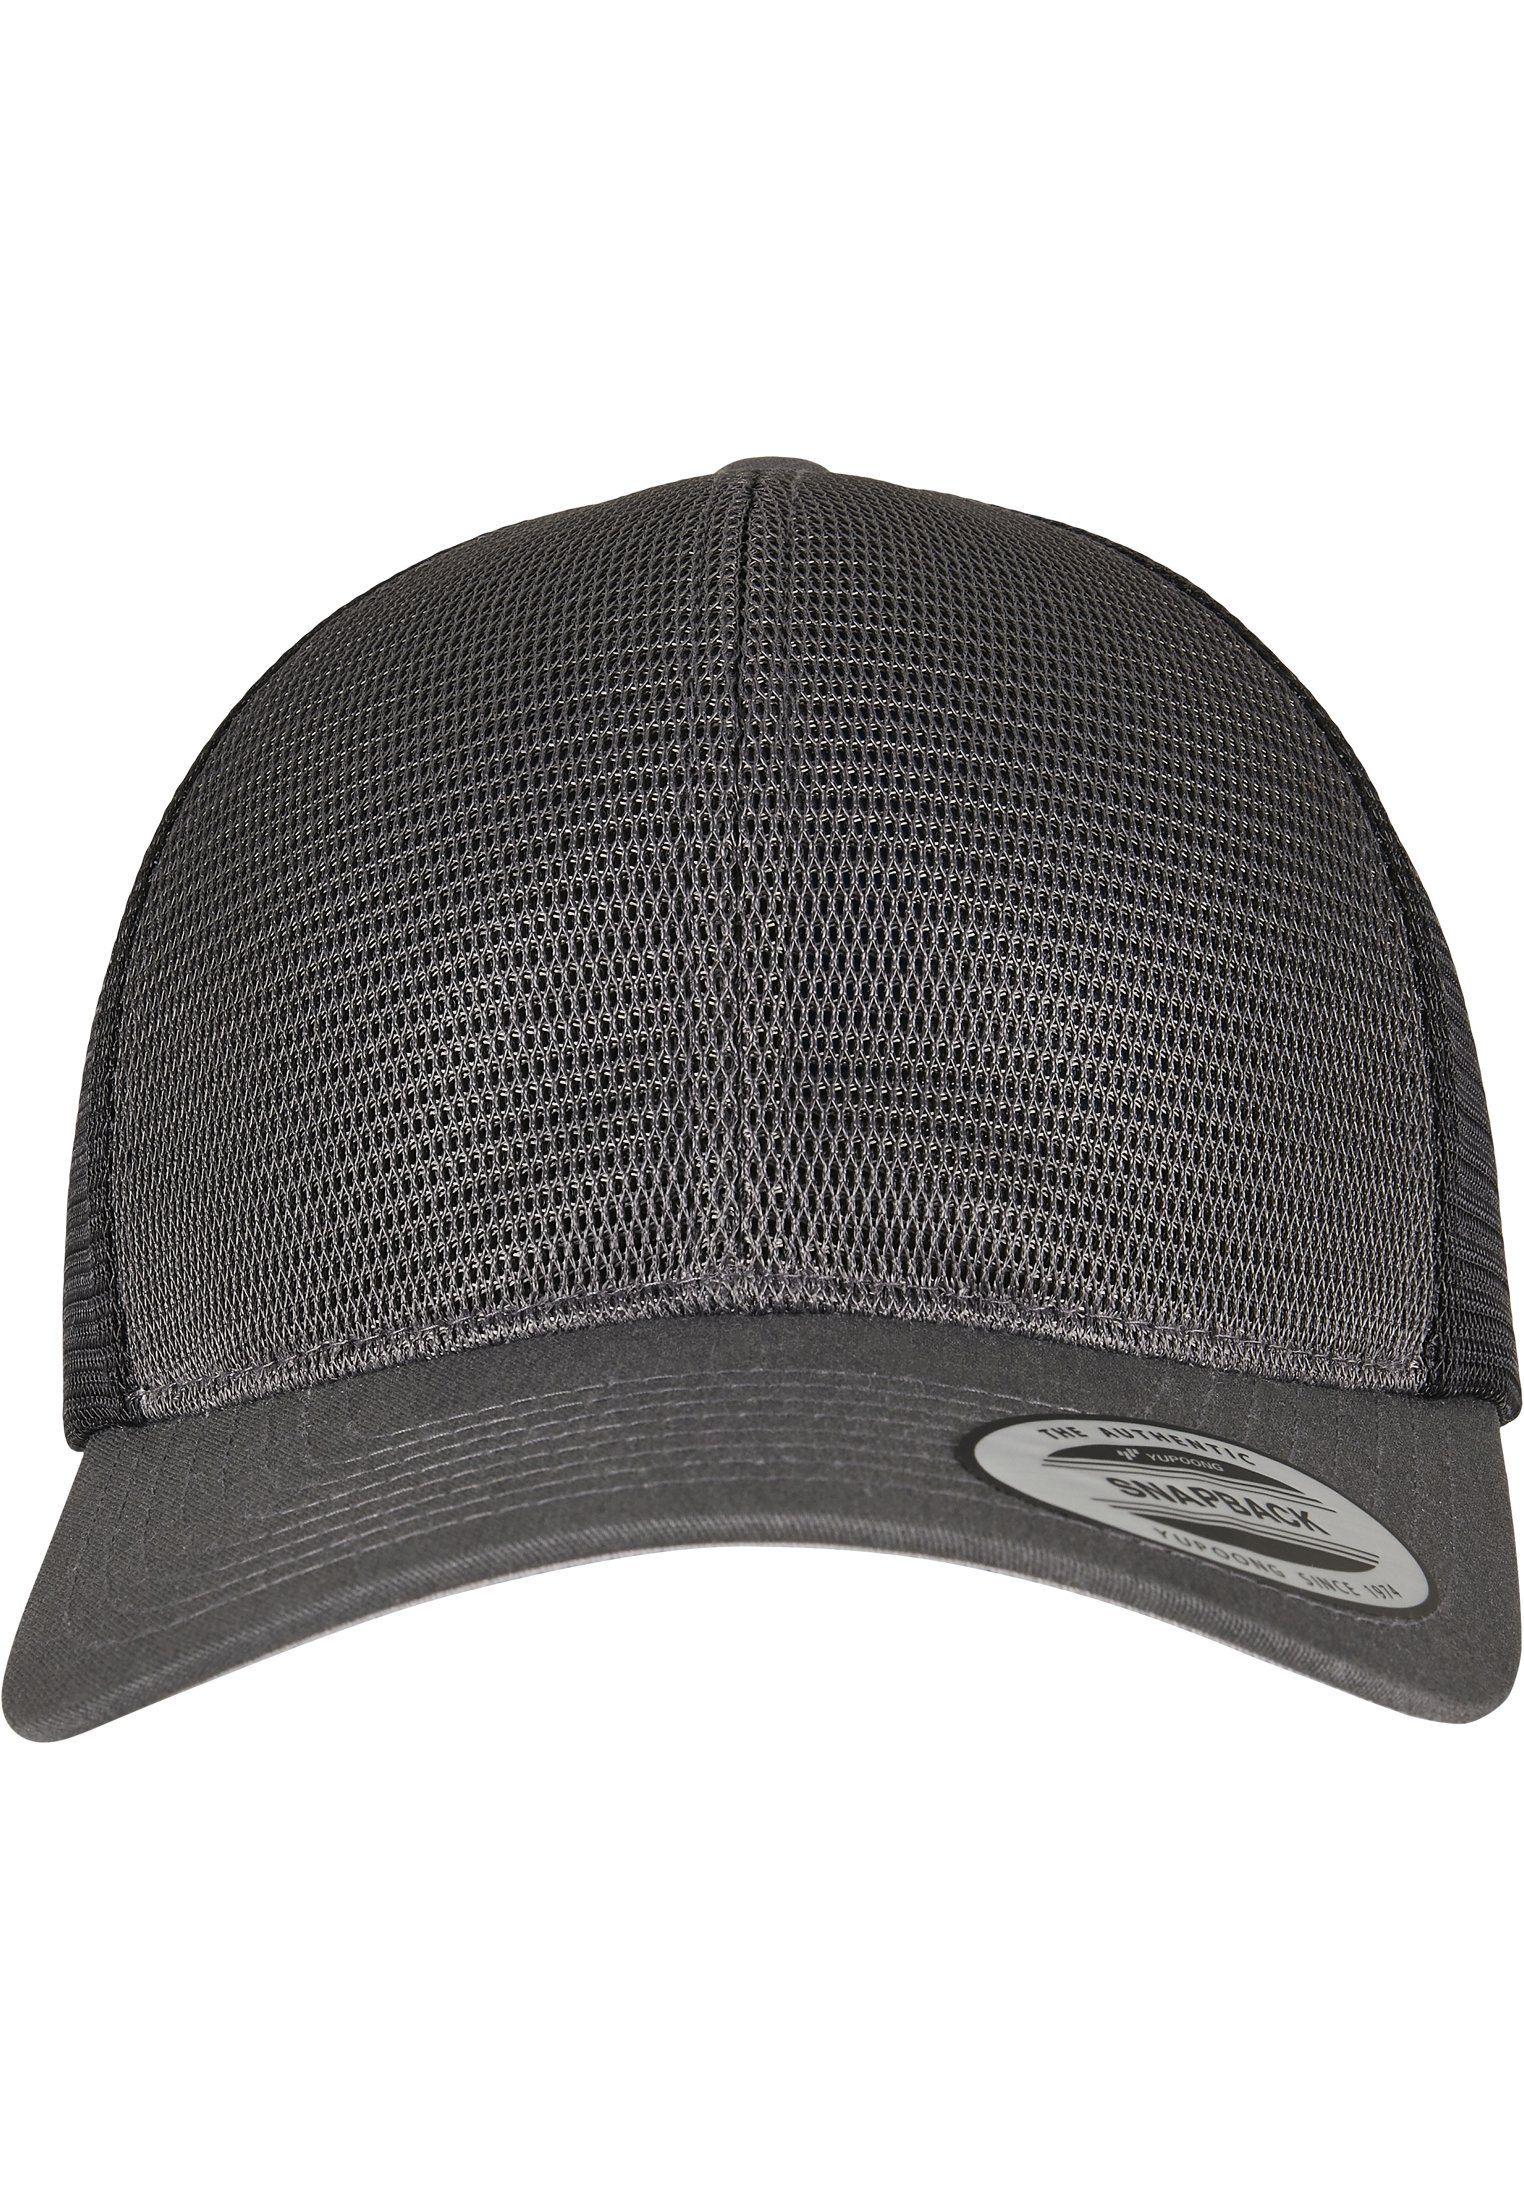 Flexfit Flex Cap Accessoires charcoal/black 2-Tone Omnimesh Cap 360°